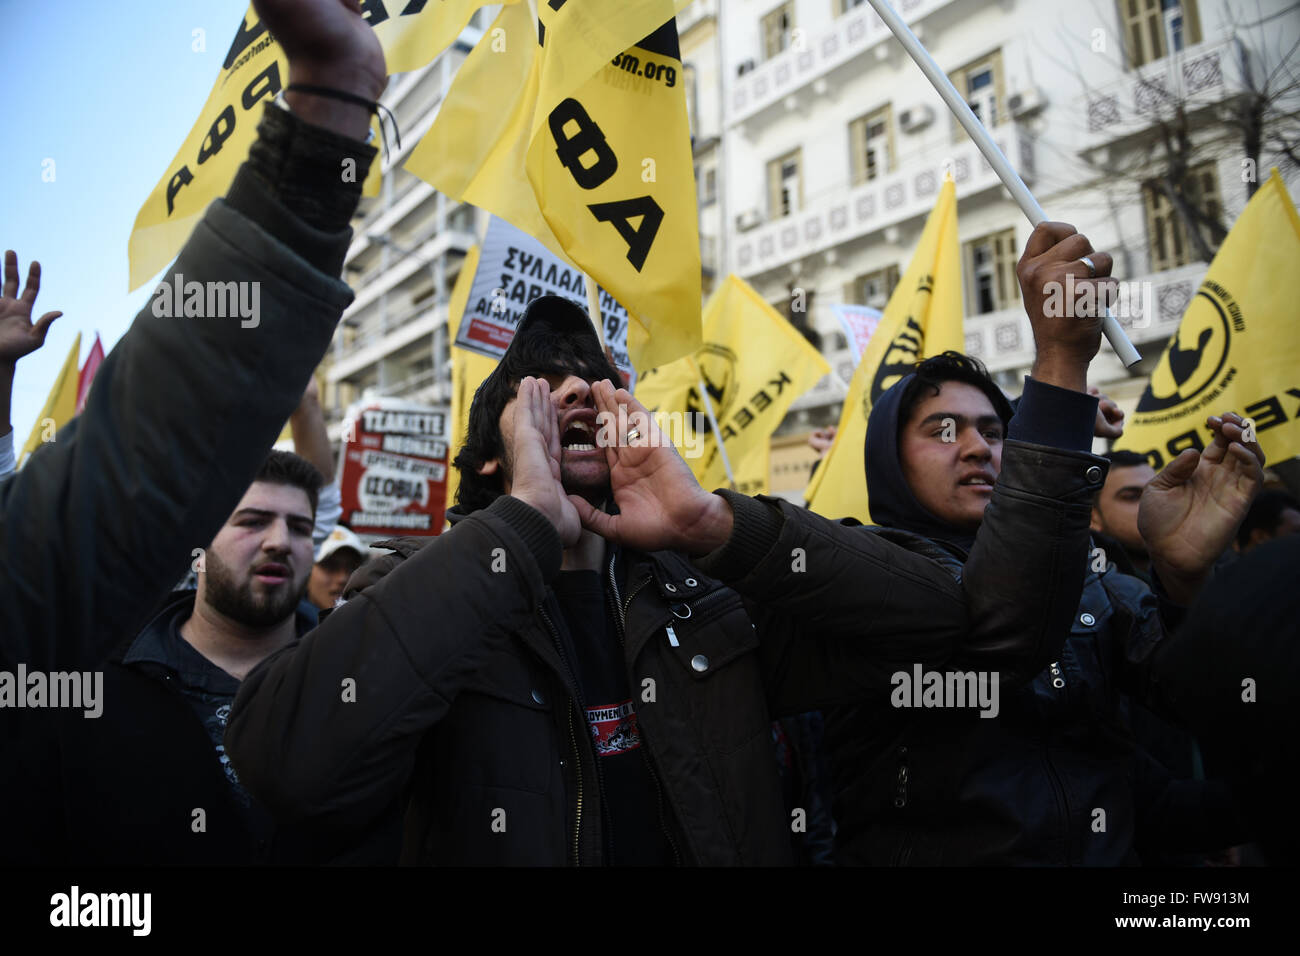 Les migrants et les réfugiés crier des slogans en marchant, au nord de la ville grecque de Thessalonique. Les migrants et les réfugiés ont montré exigeant pour les frontières de l'UE d'ouvrir, afin de continuer leur voyage vers le nord de l'Europe. Banque D'Images